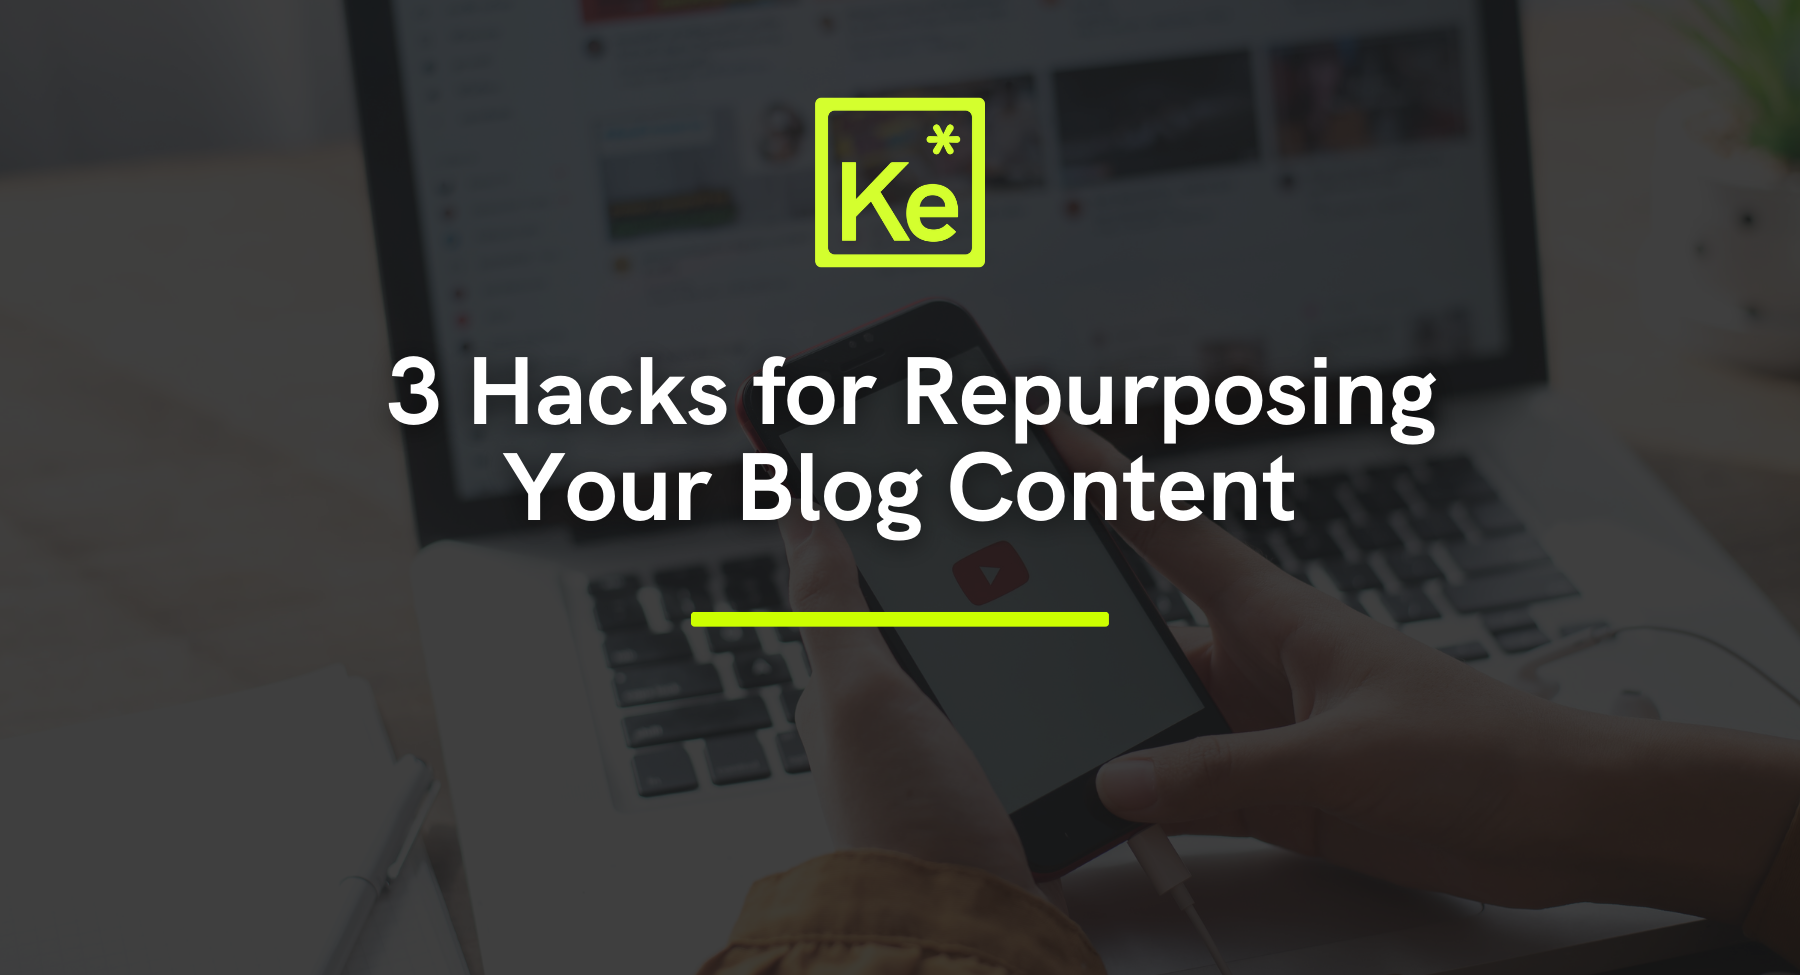 Ke - 3 Hacks for Repurposing Your Blog Content